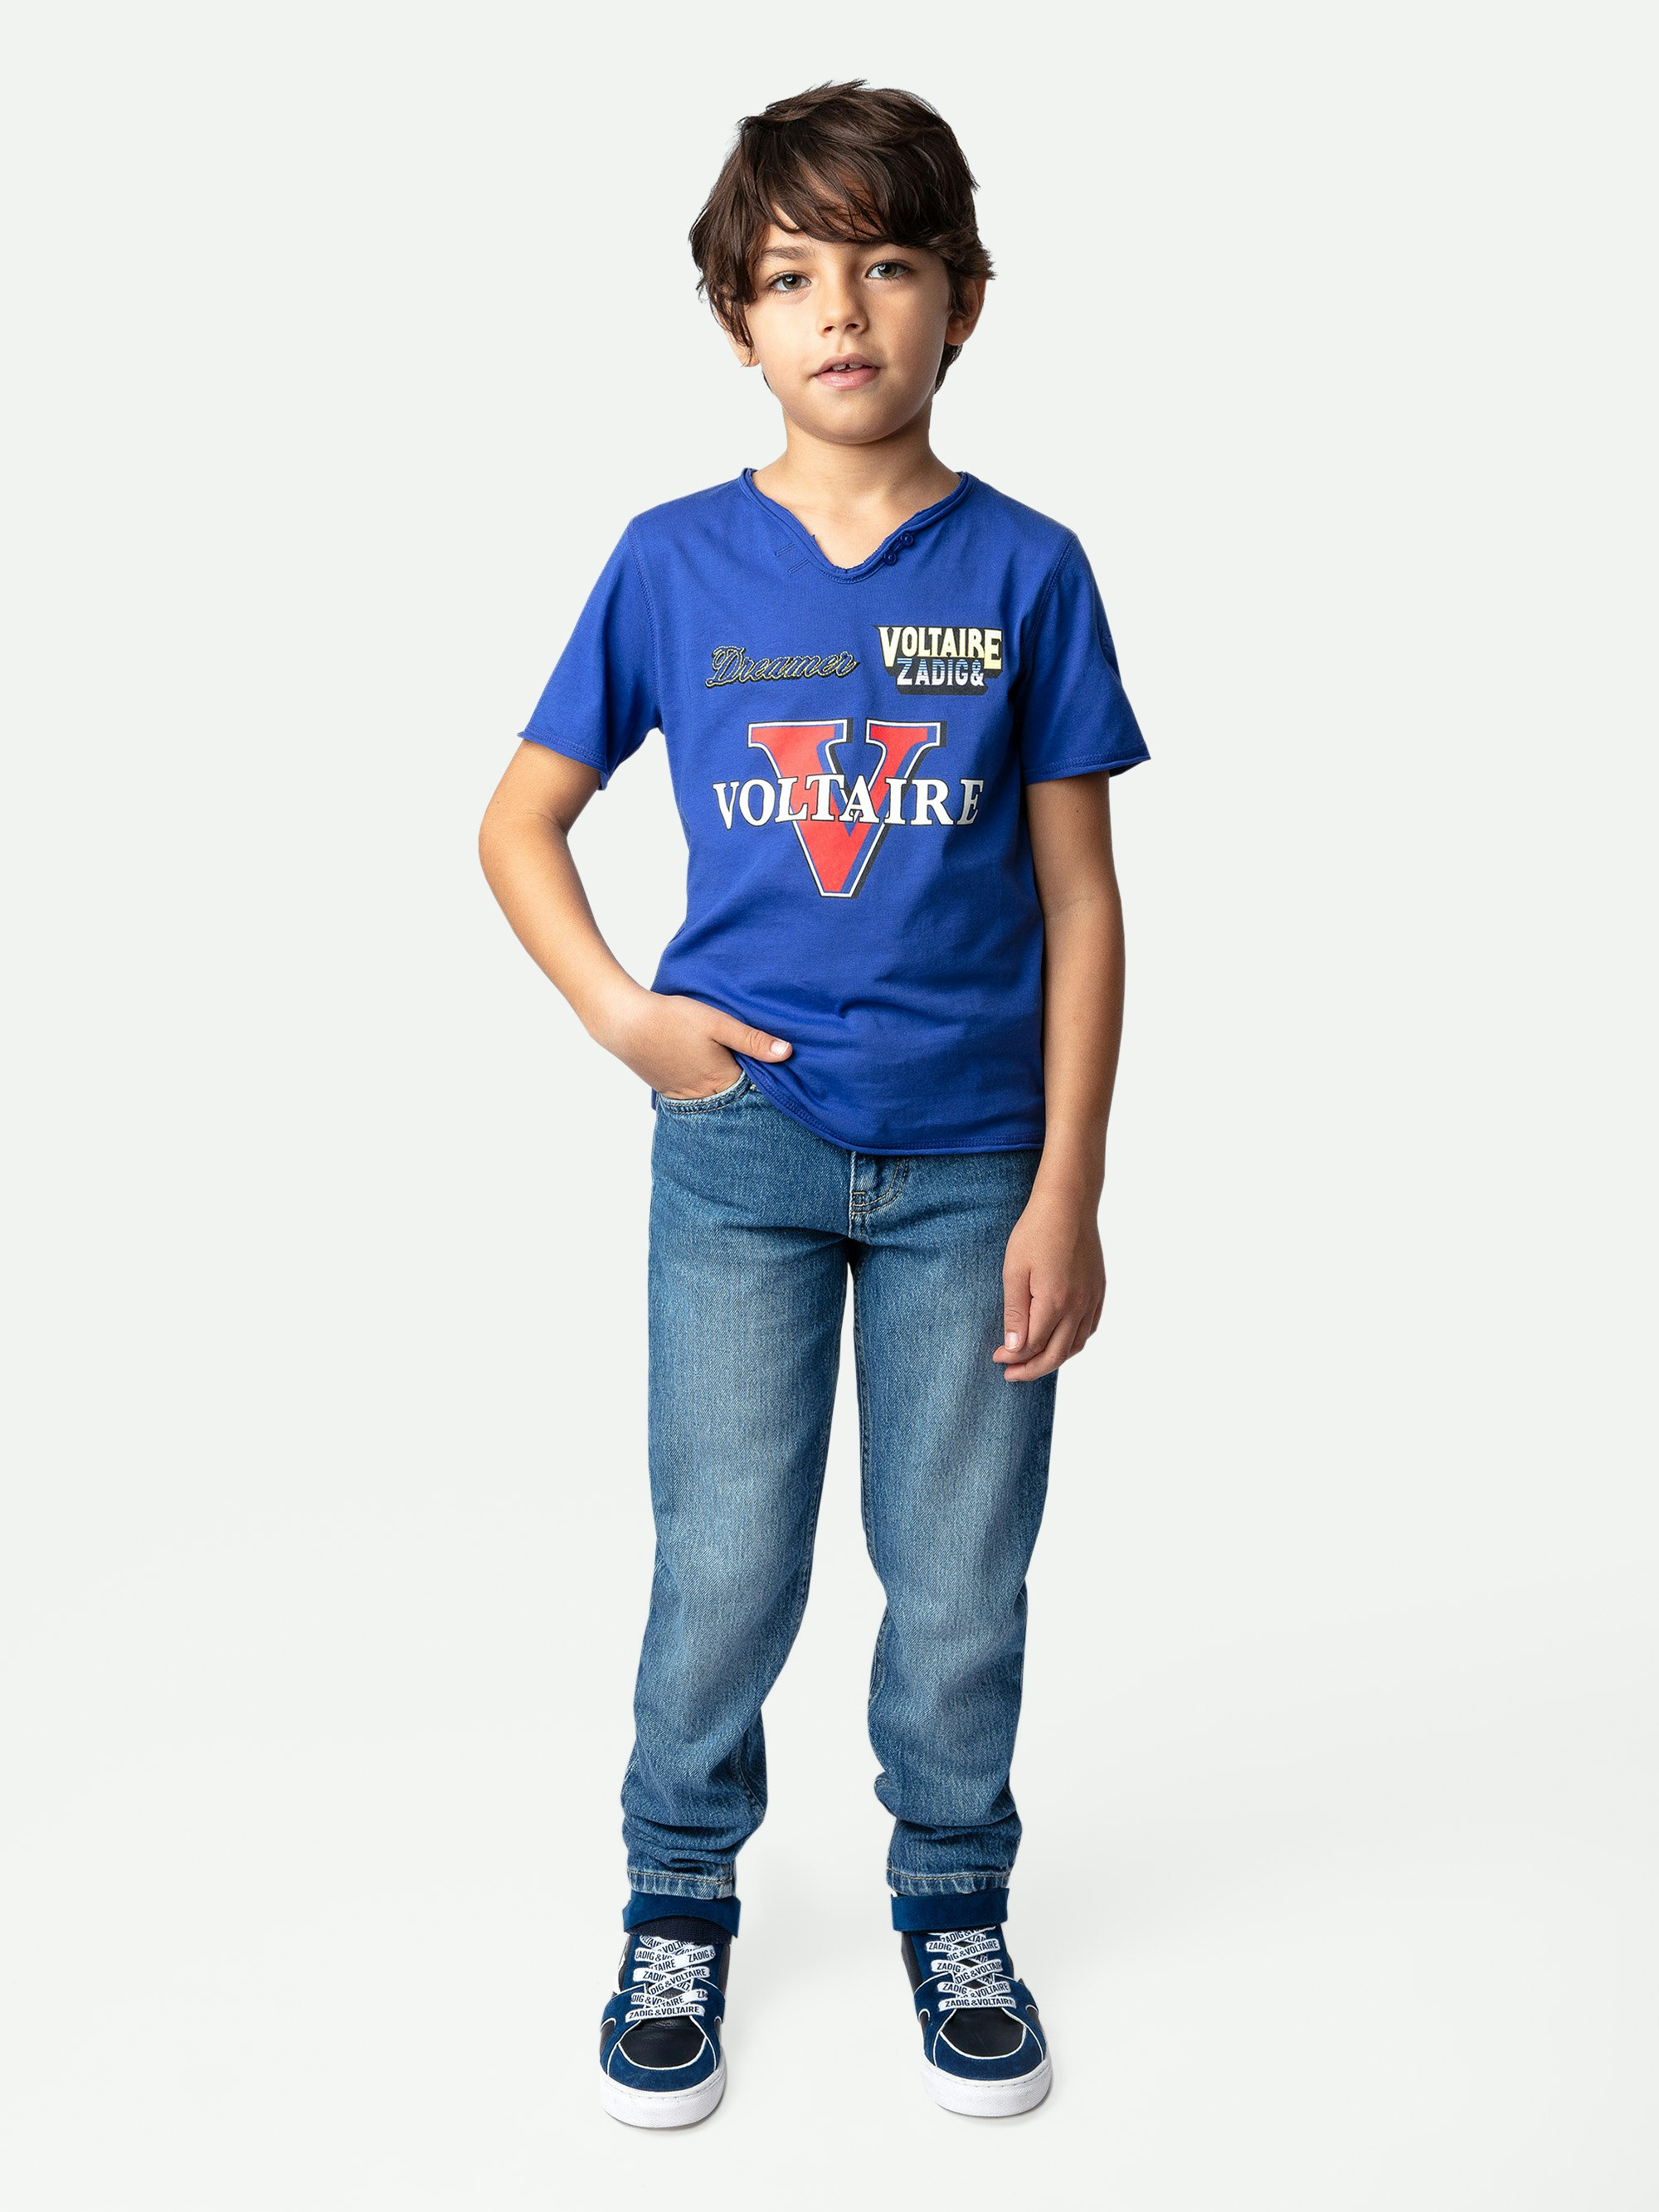 T-shirt Boxer Garçon - T-shirt garçon à manches courtes en jersey coton bleu orné d'illustrations et de broderies.